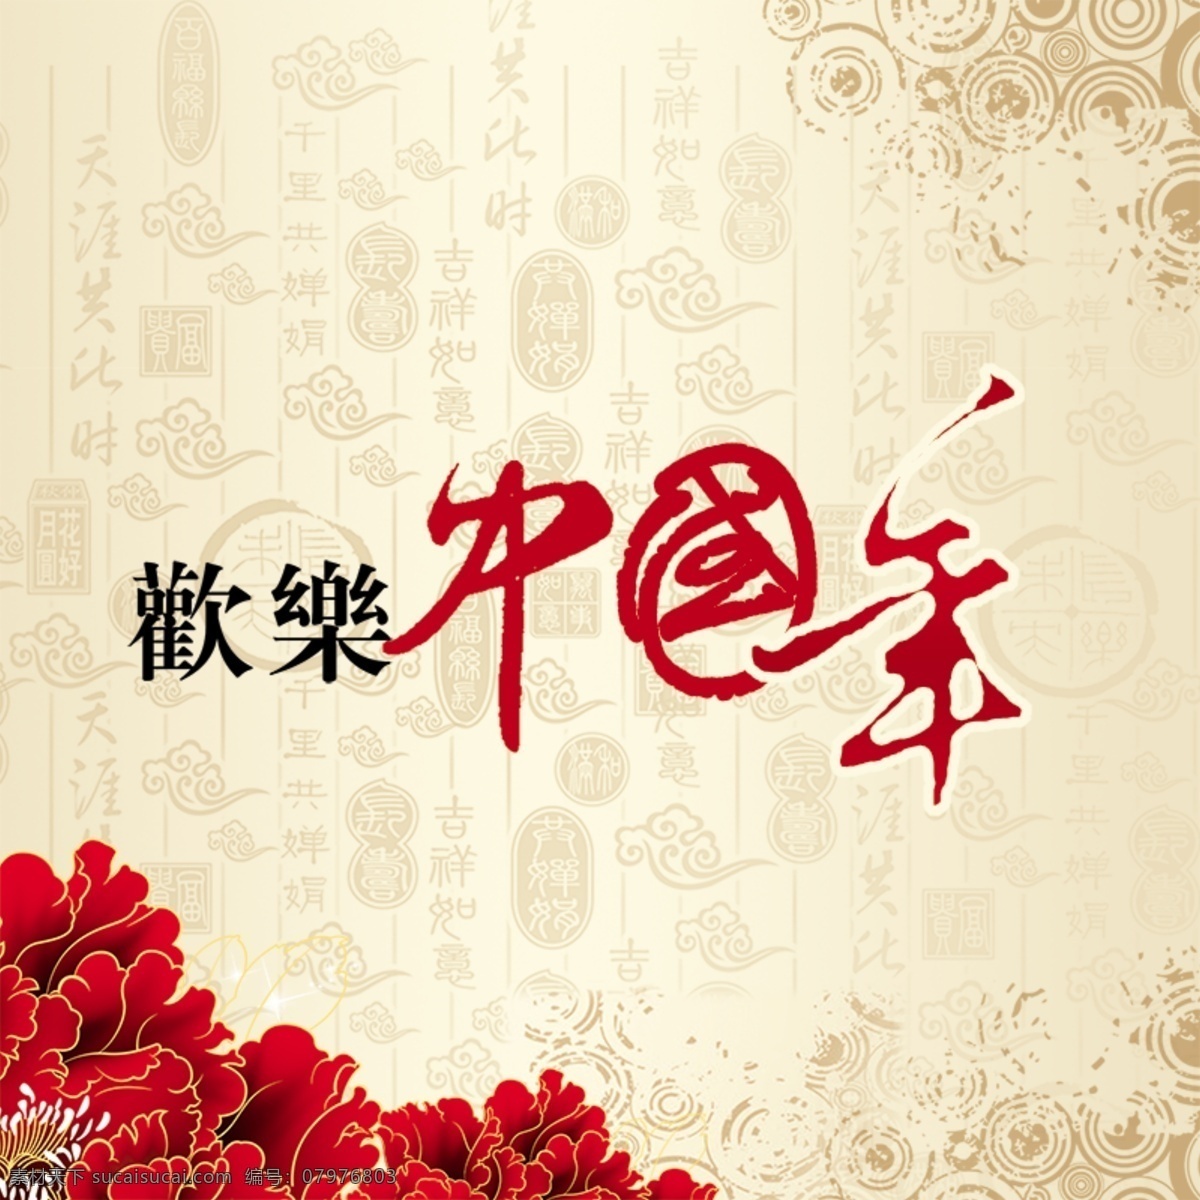 欢乐 中国 年 主 图 欢乐中国年 春节 喜庆 中国风 牡丹花 红色